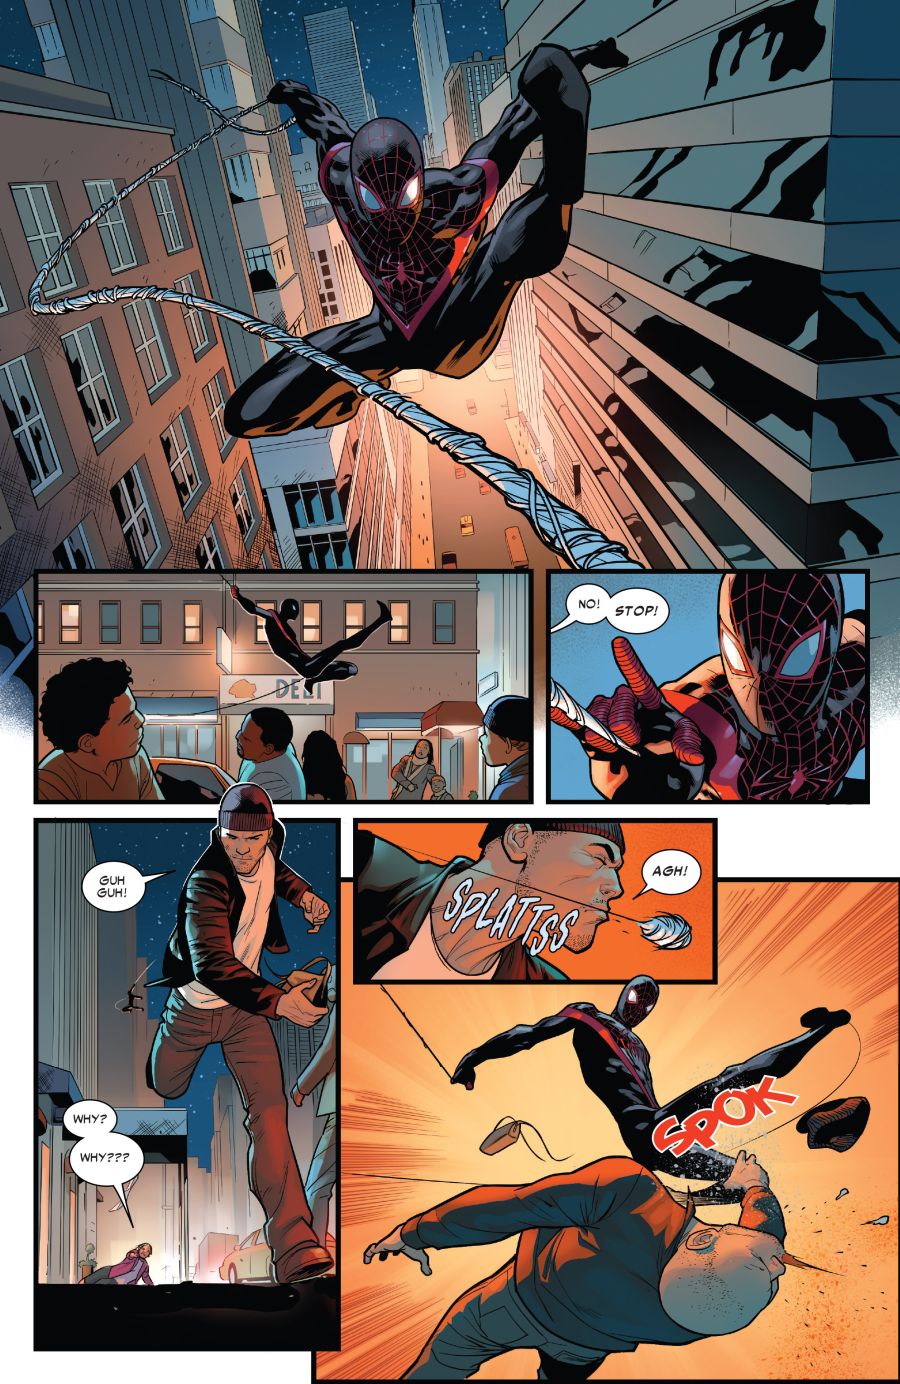 Spider-Man #16